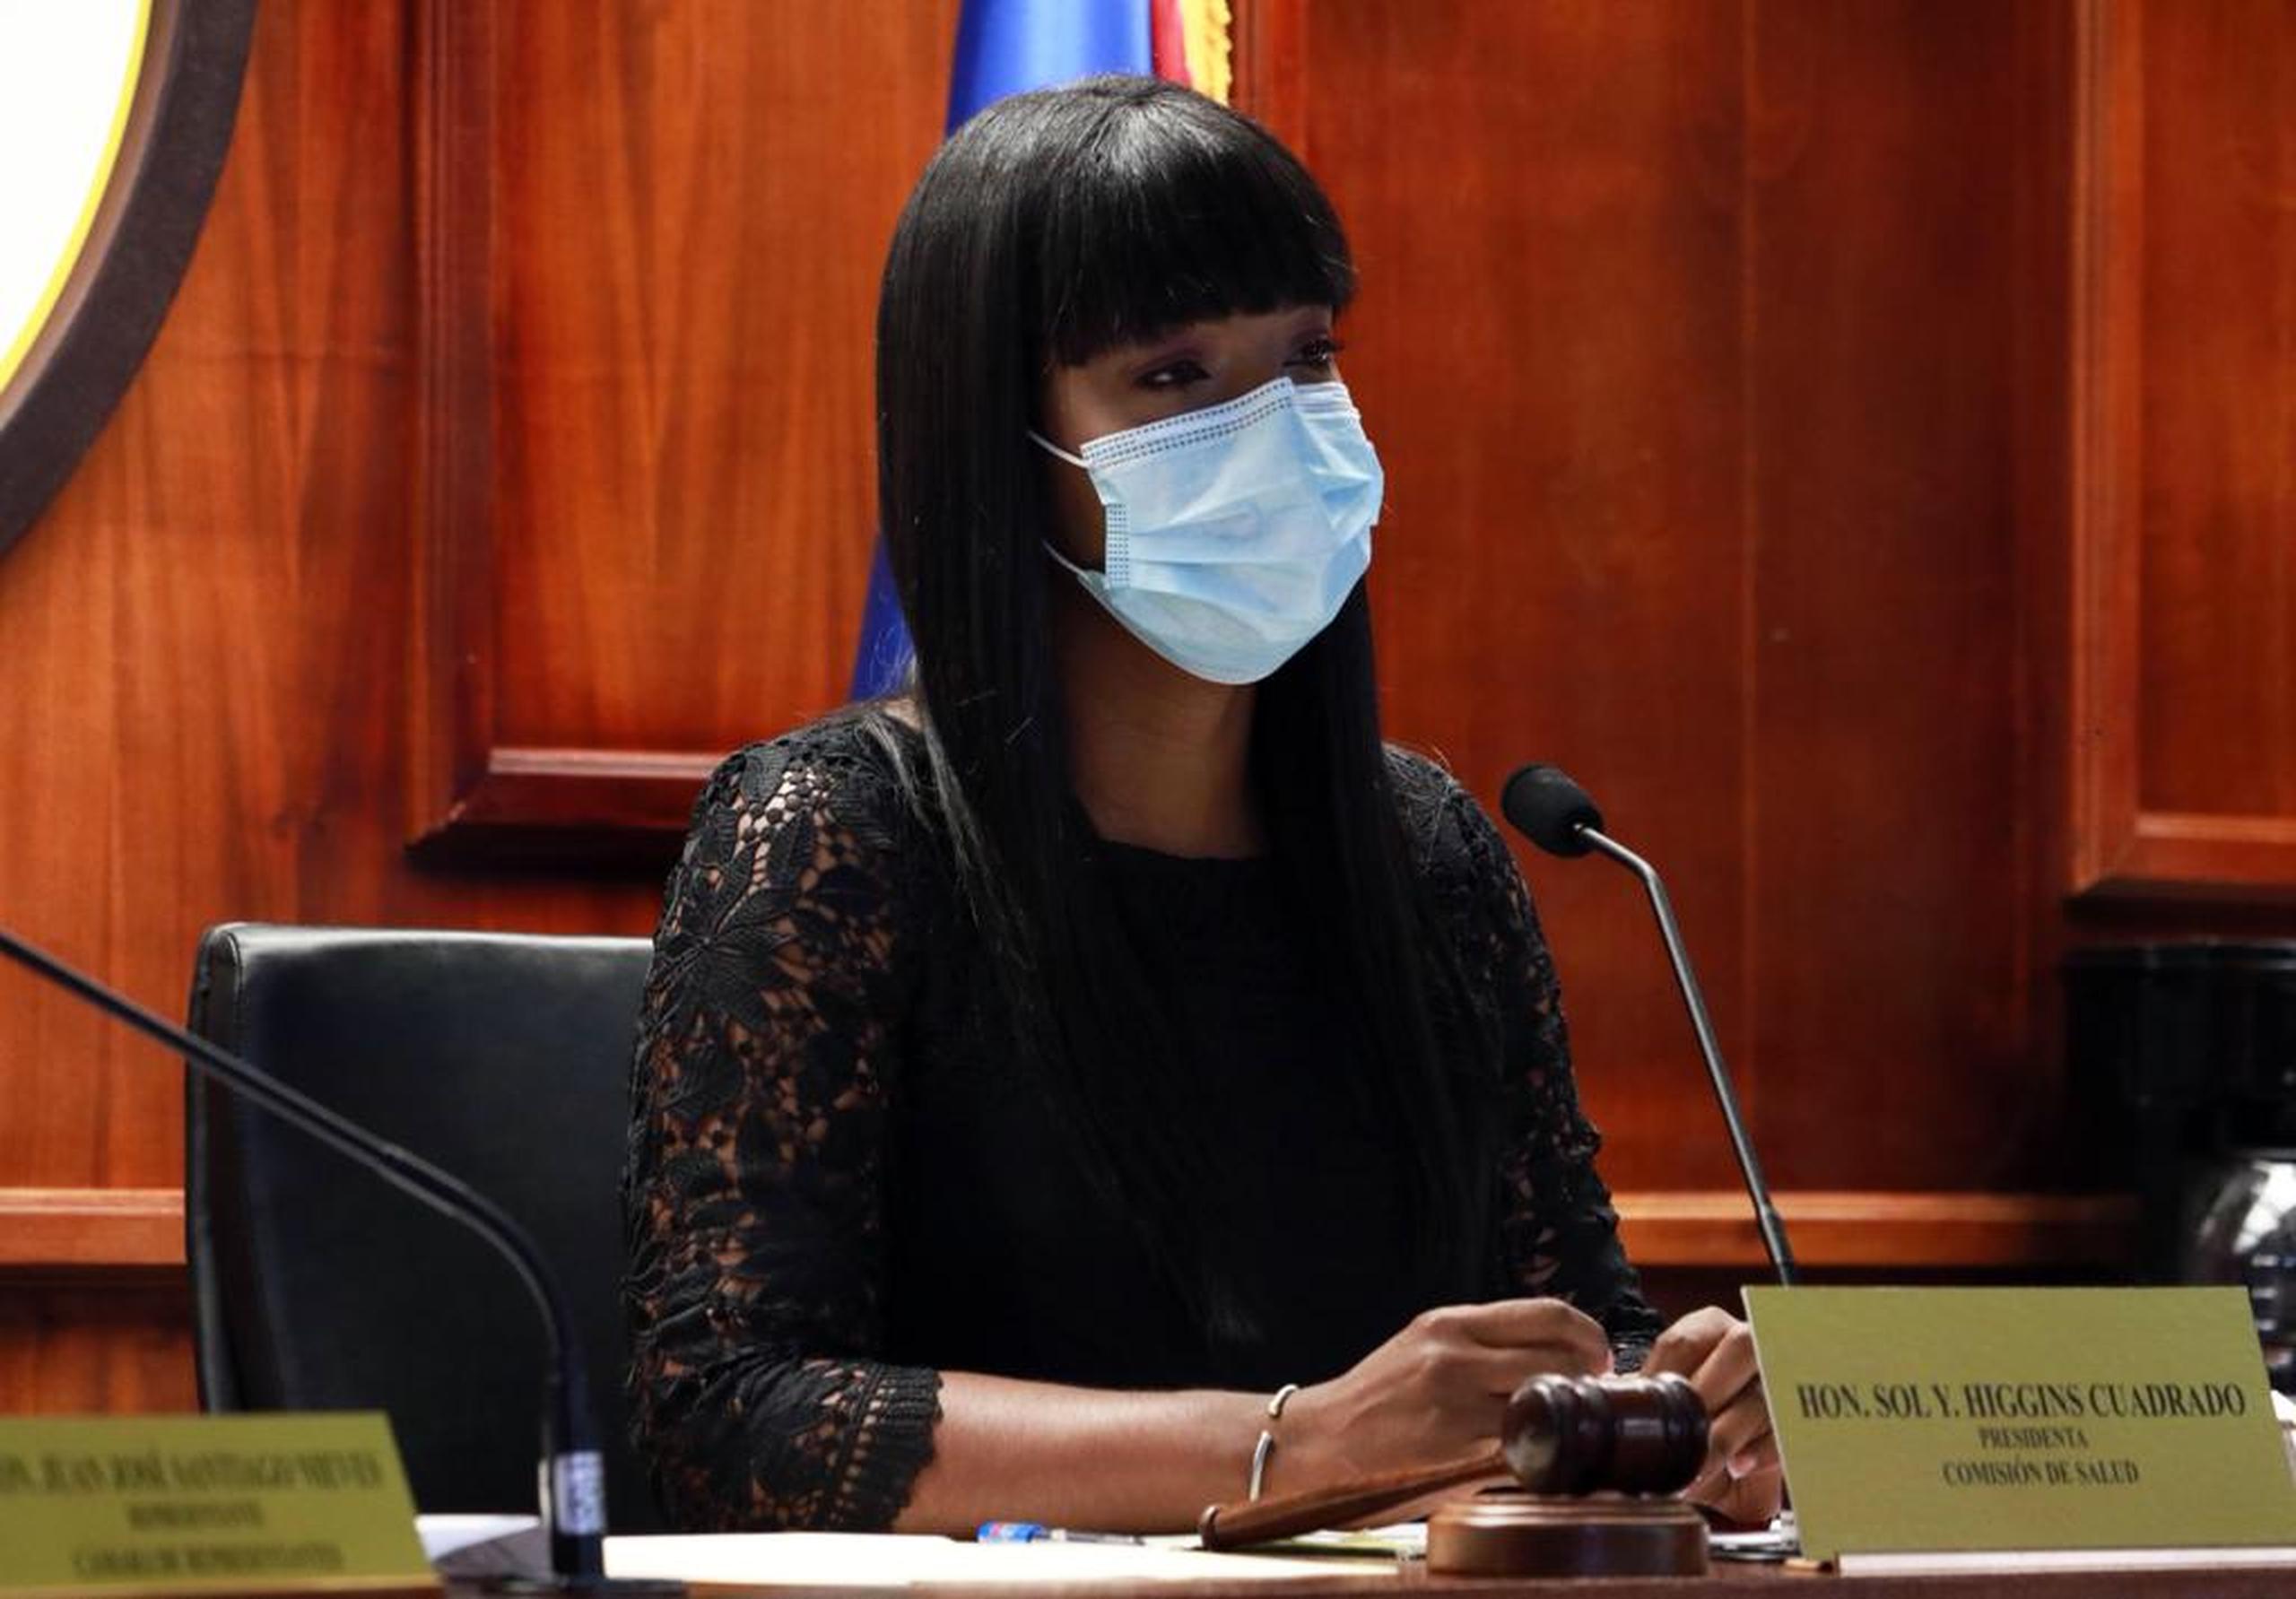 La representante Sol Higgins Cuadrado, presidenta de la Comisión de Salud de la Cámara de Representantes, estuvo a cargo de la vista.